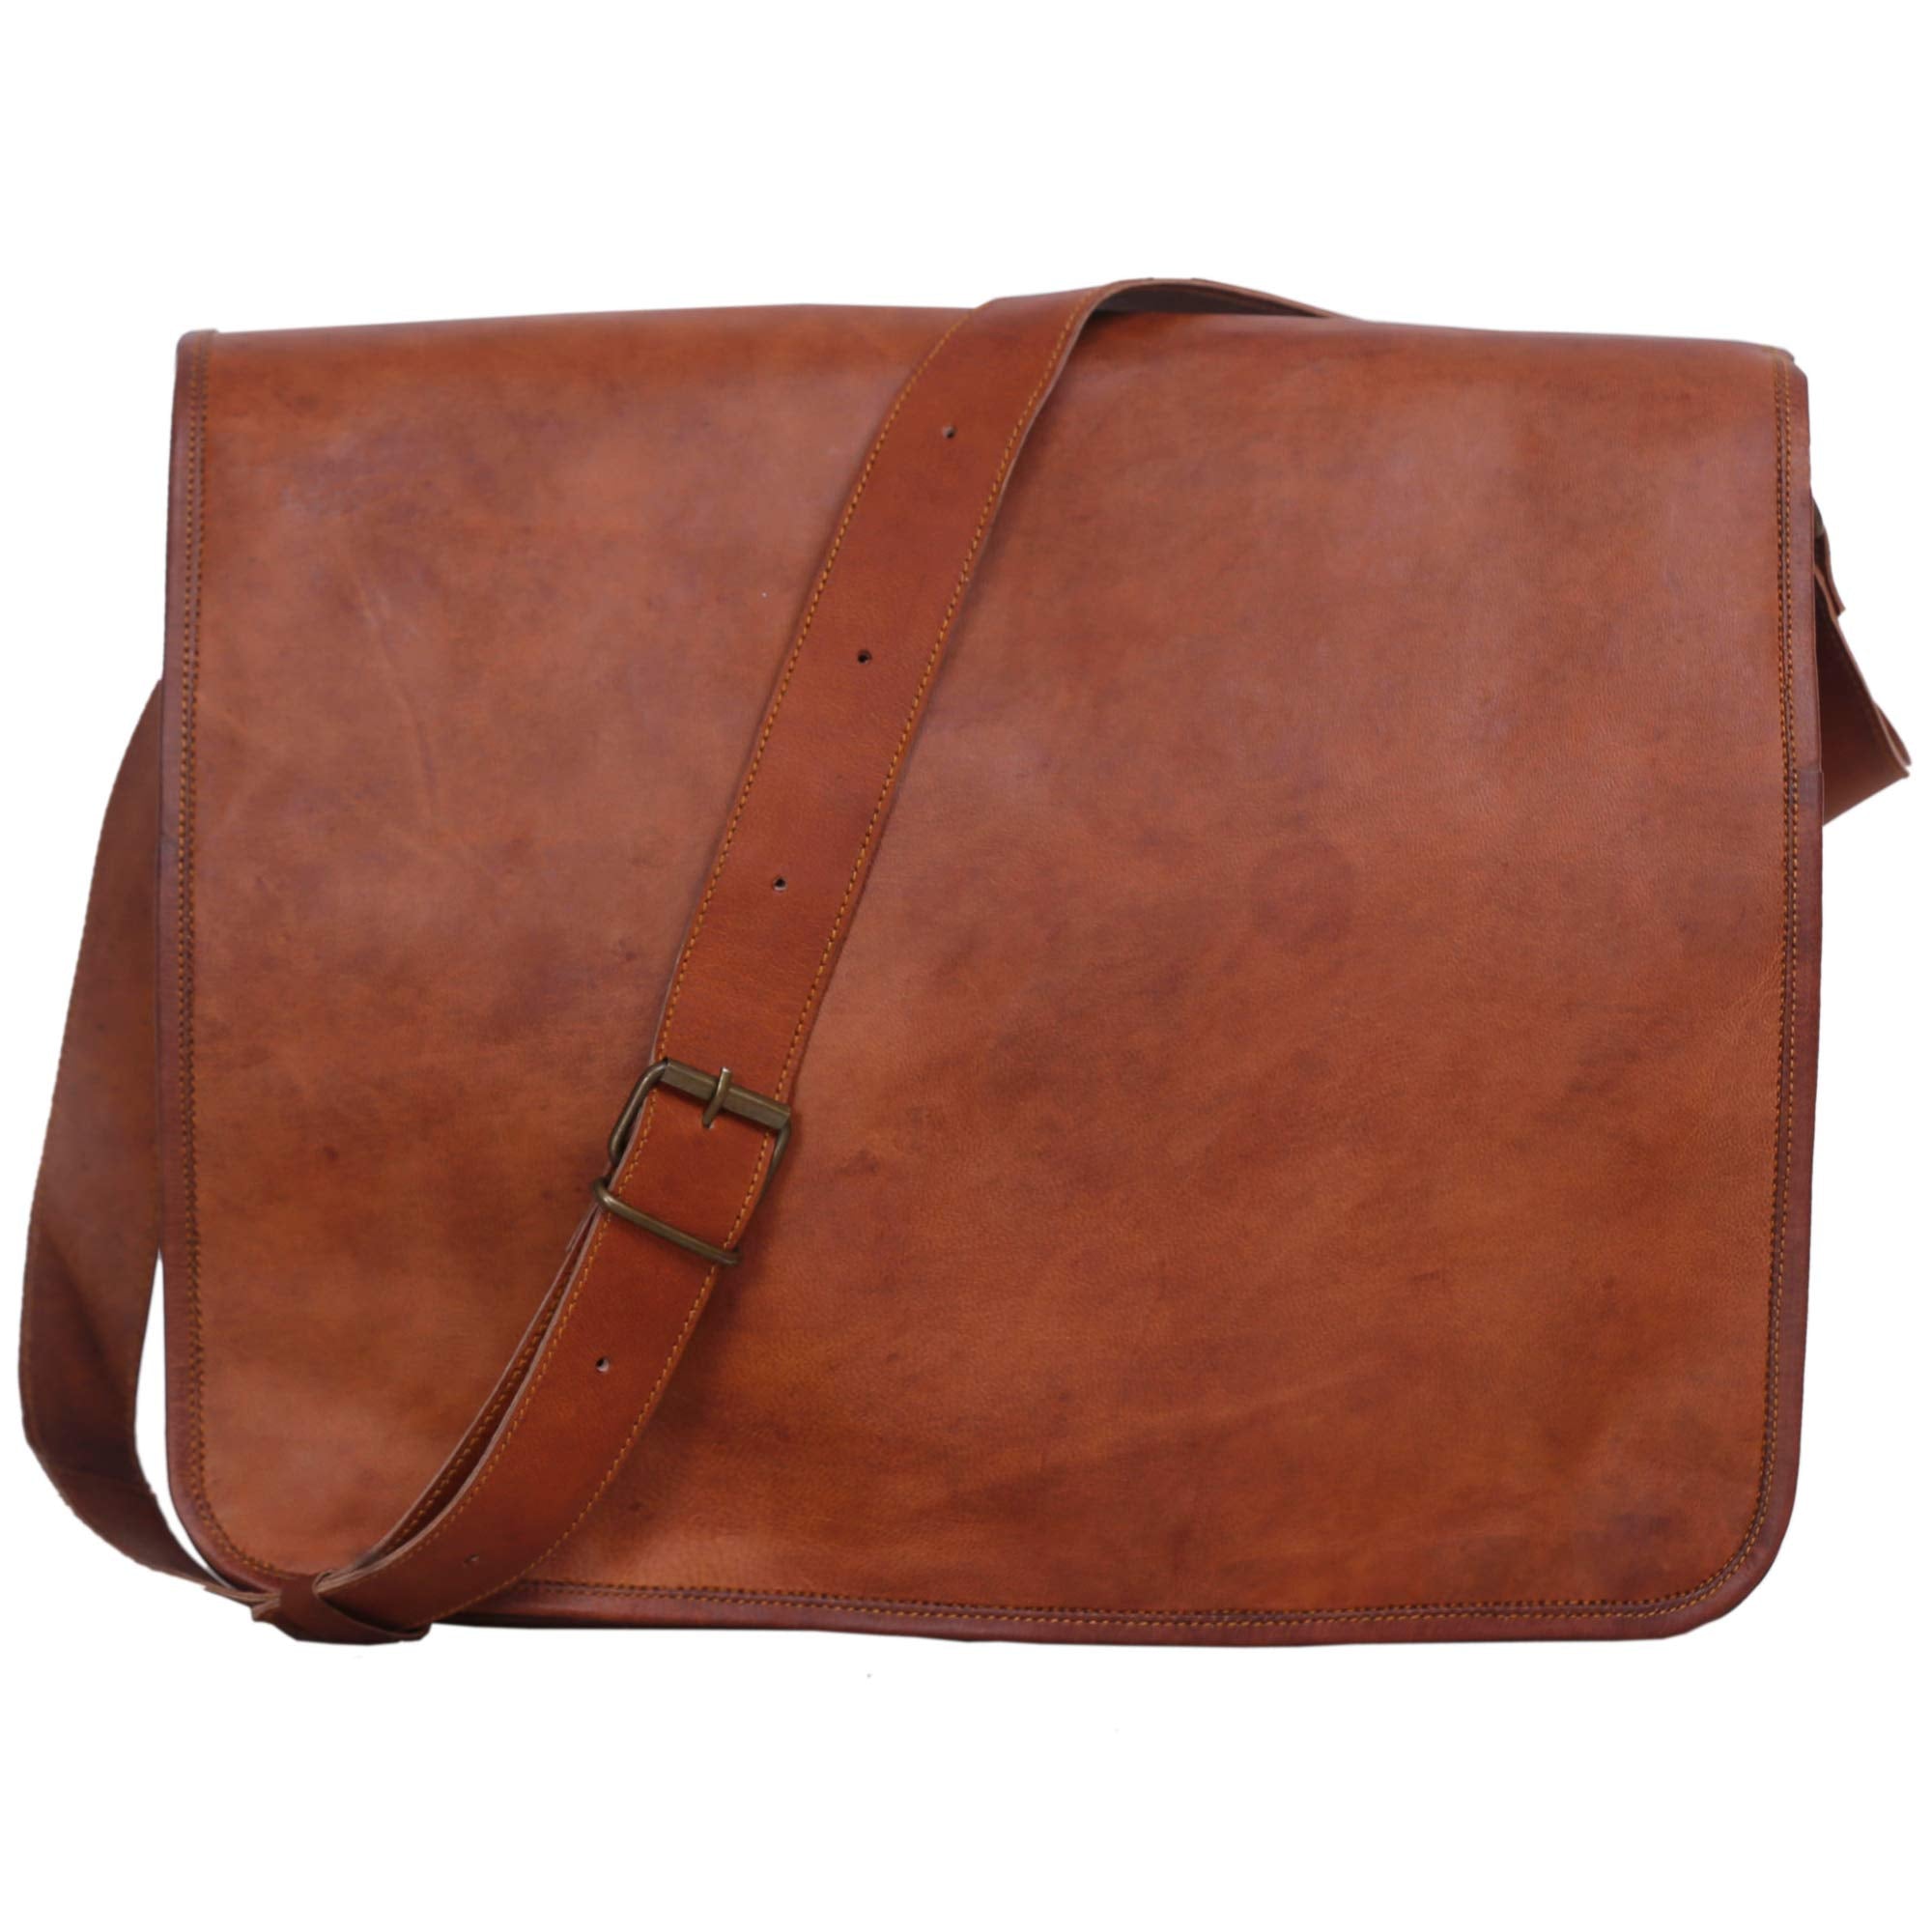 Leather Satchel Bag Cross-Body Travel Bag Leather messenger Bag Laptop  Shoulder Bag, gift for women Leather college bag soft leather purse